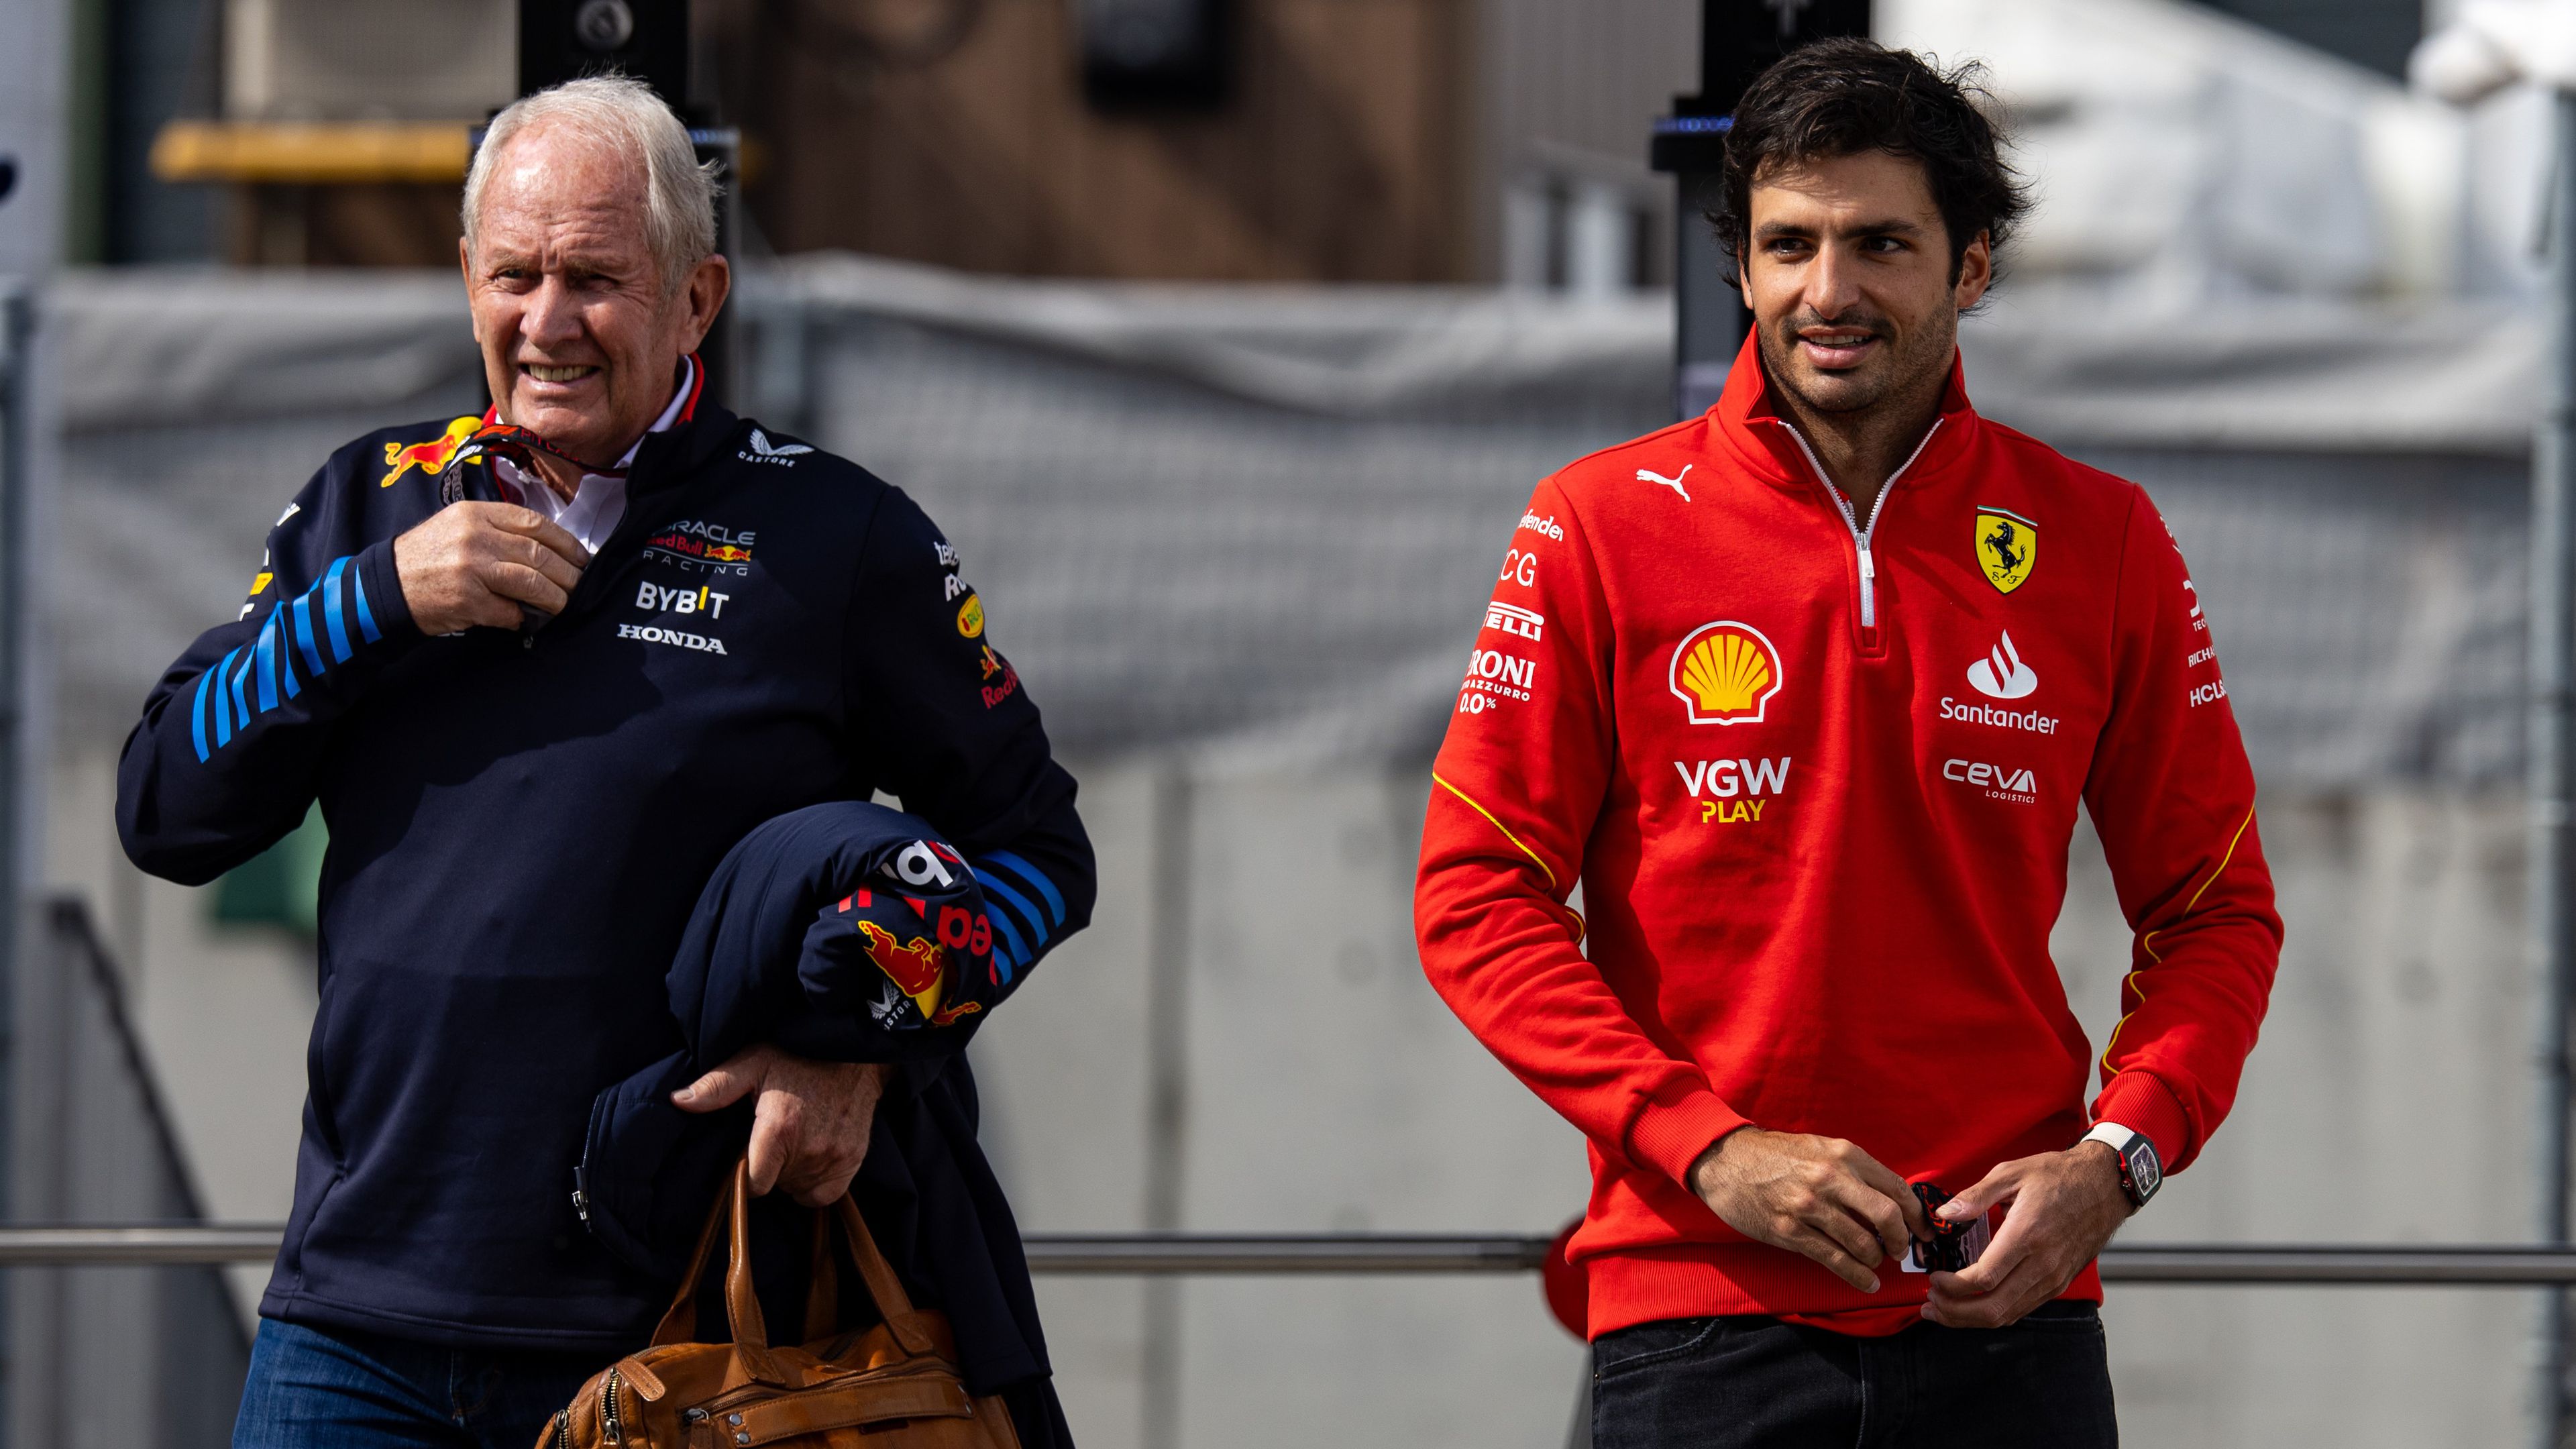 F1-hírek: a Red Bull sem tett le Sainz megszerzéséről